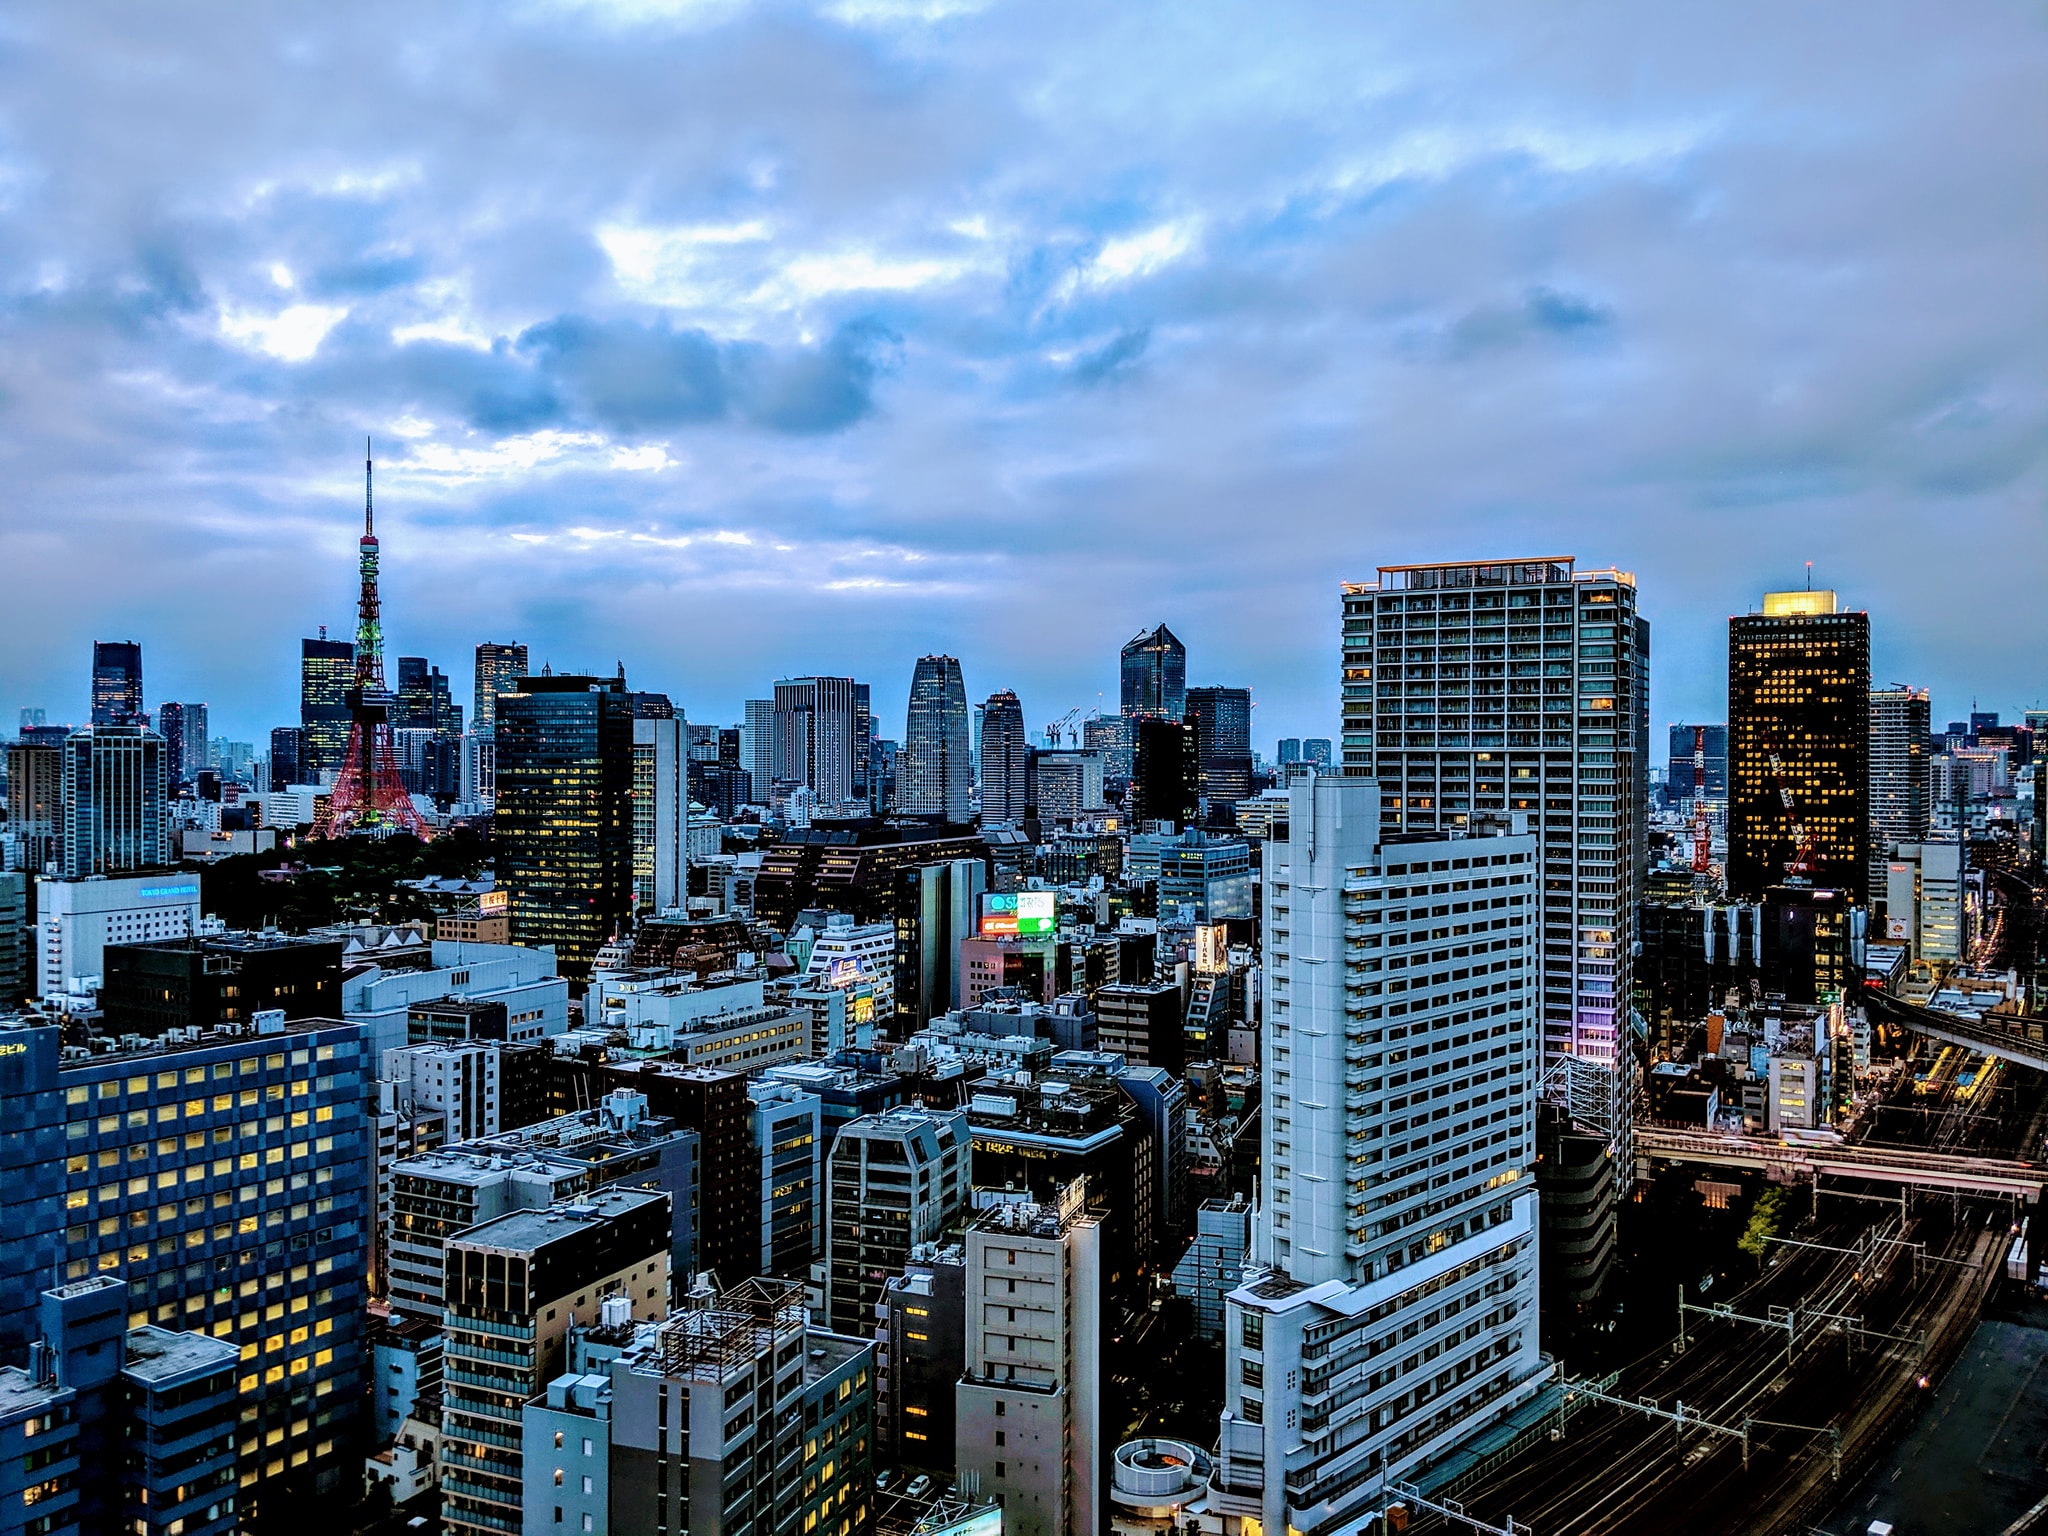 Tokyo in Twilight